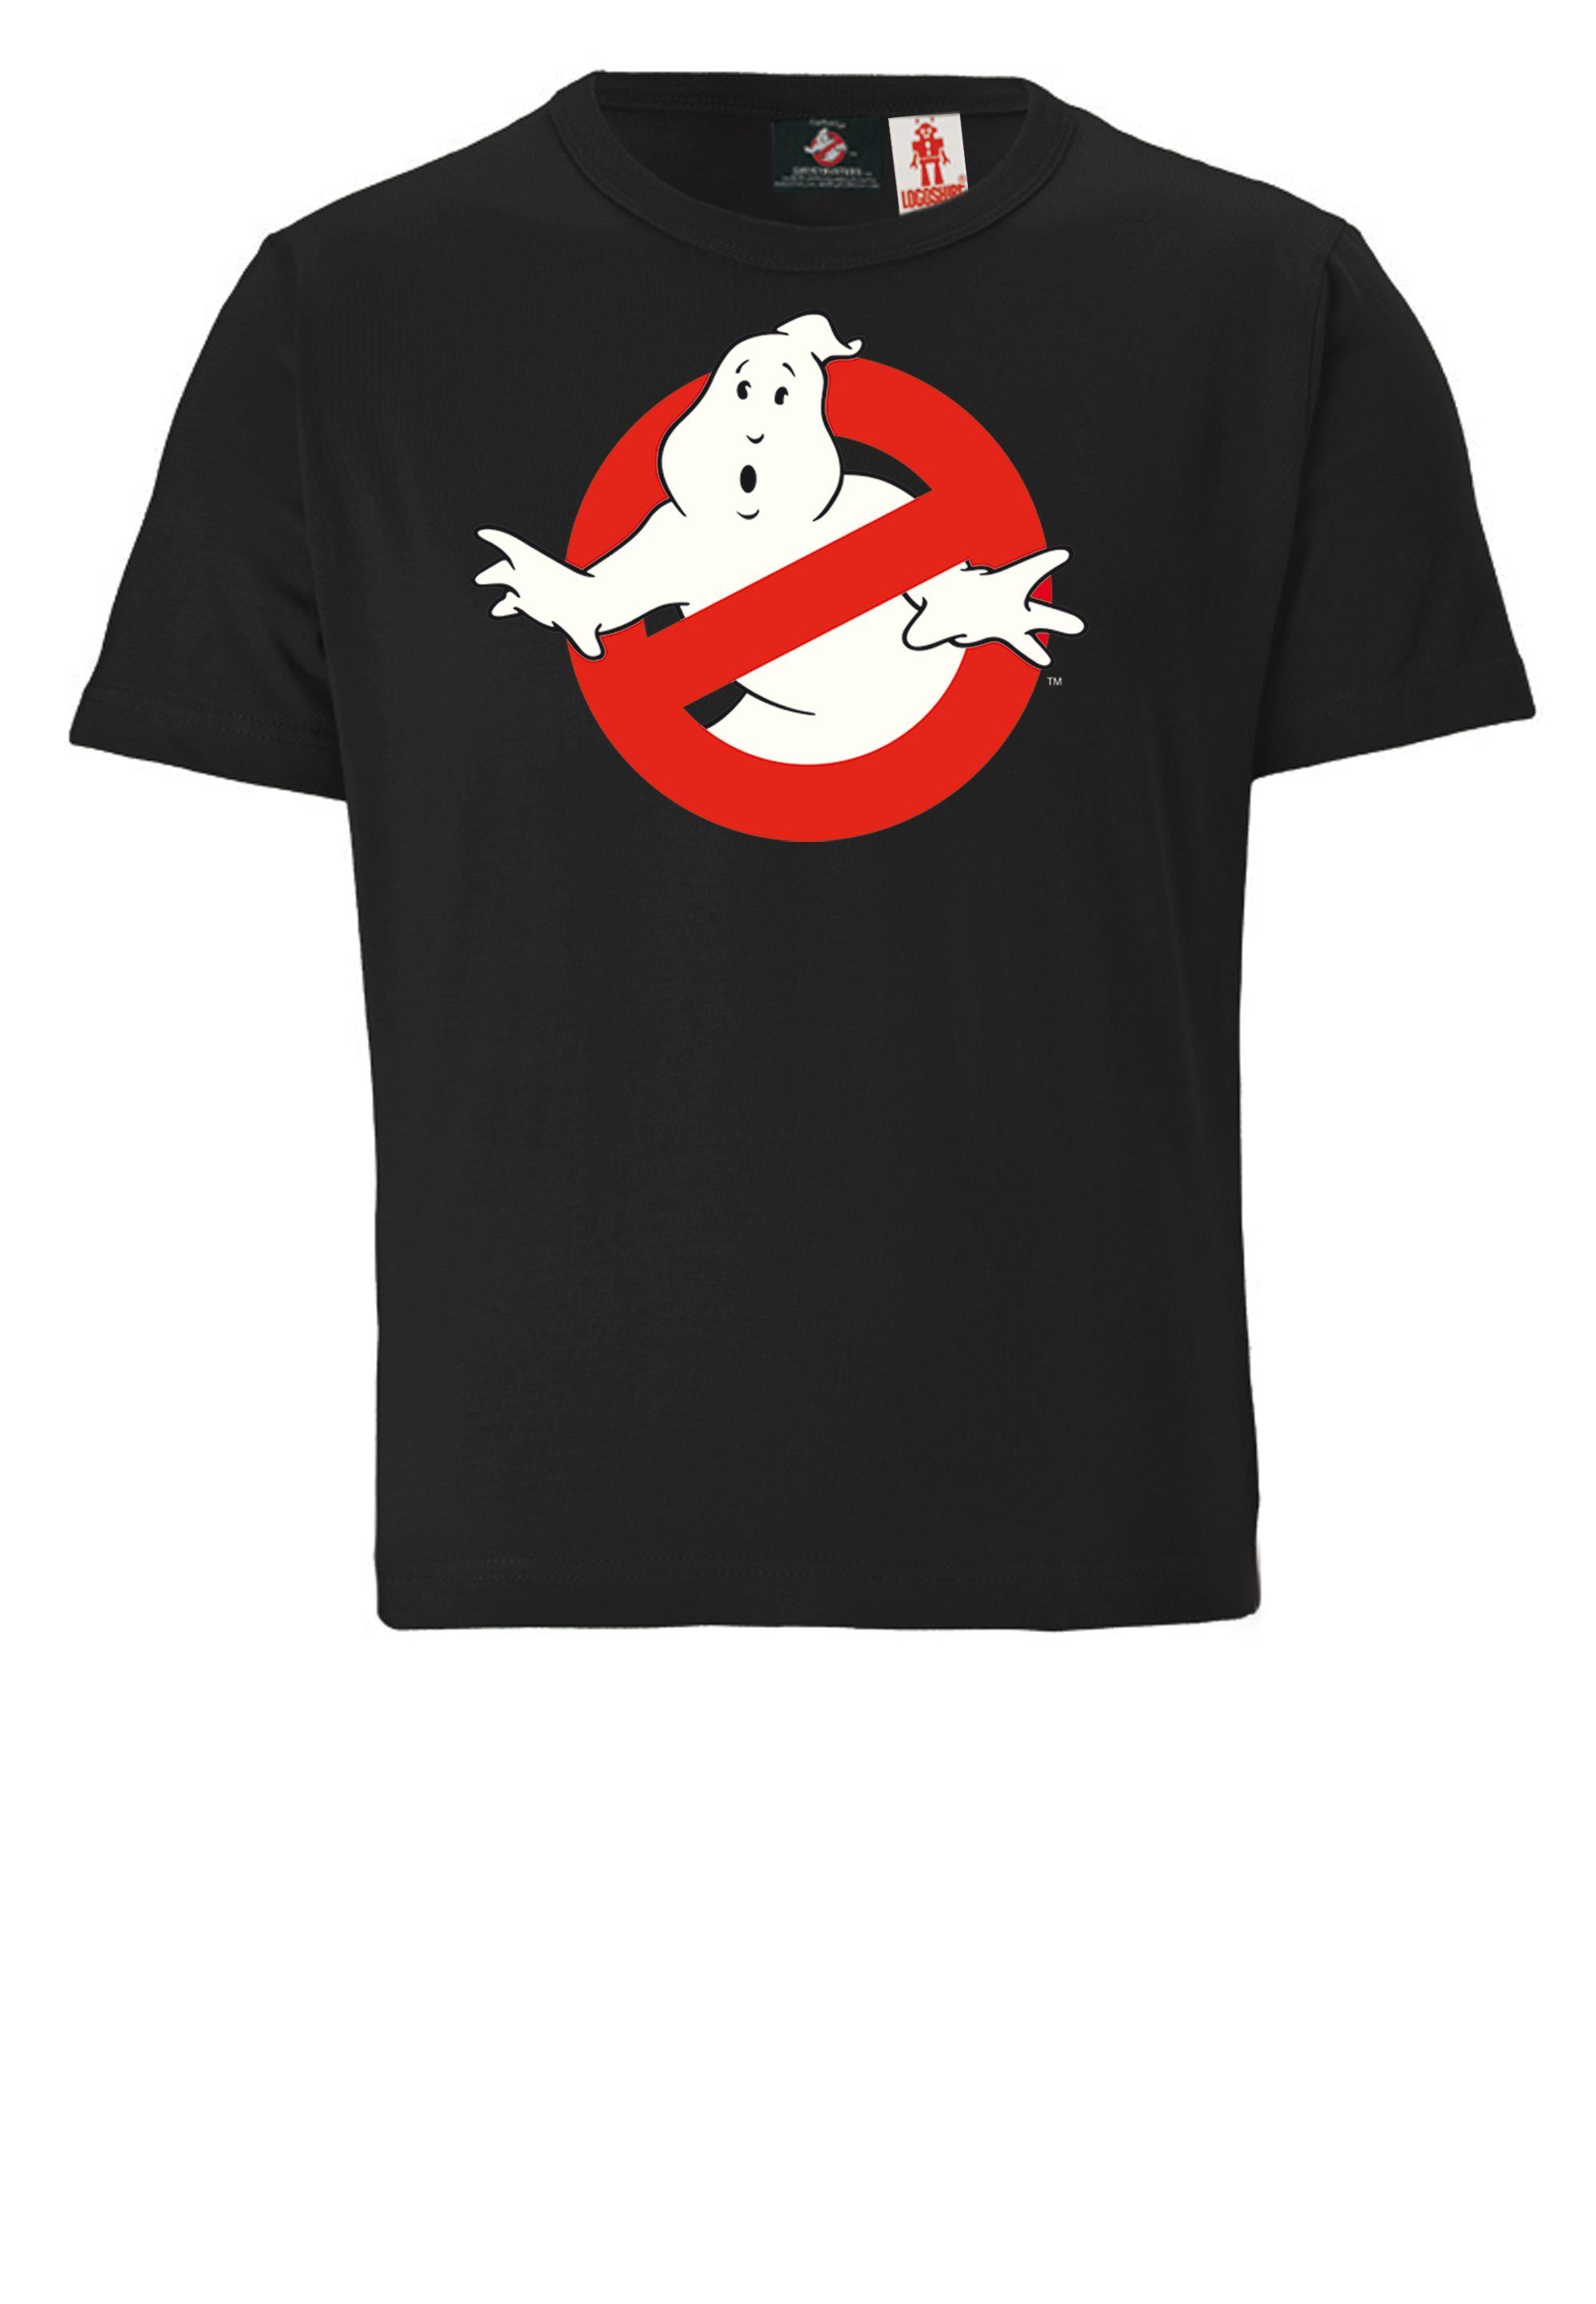 LOGOSHIRT T-Shirt lizenziertem Design mit Ghostbusters